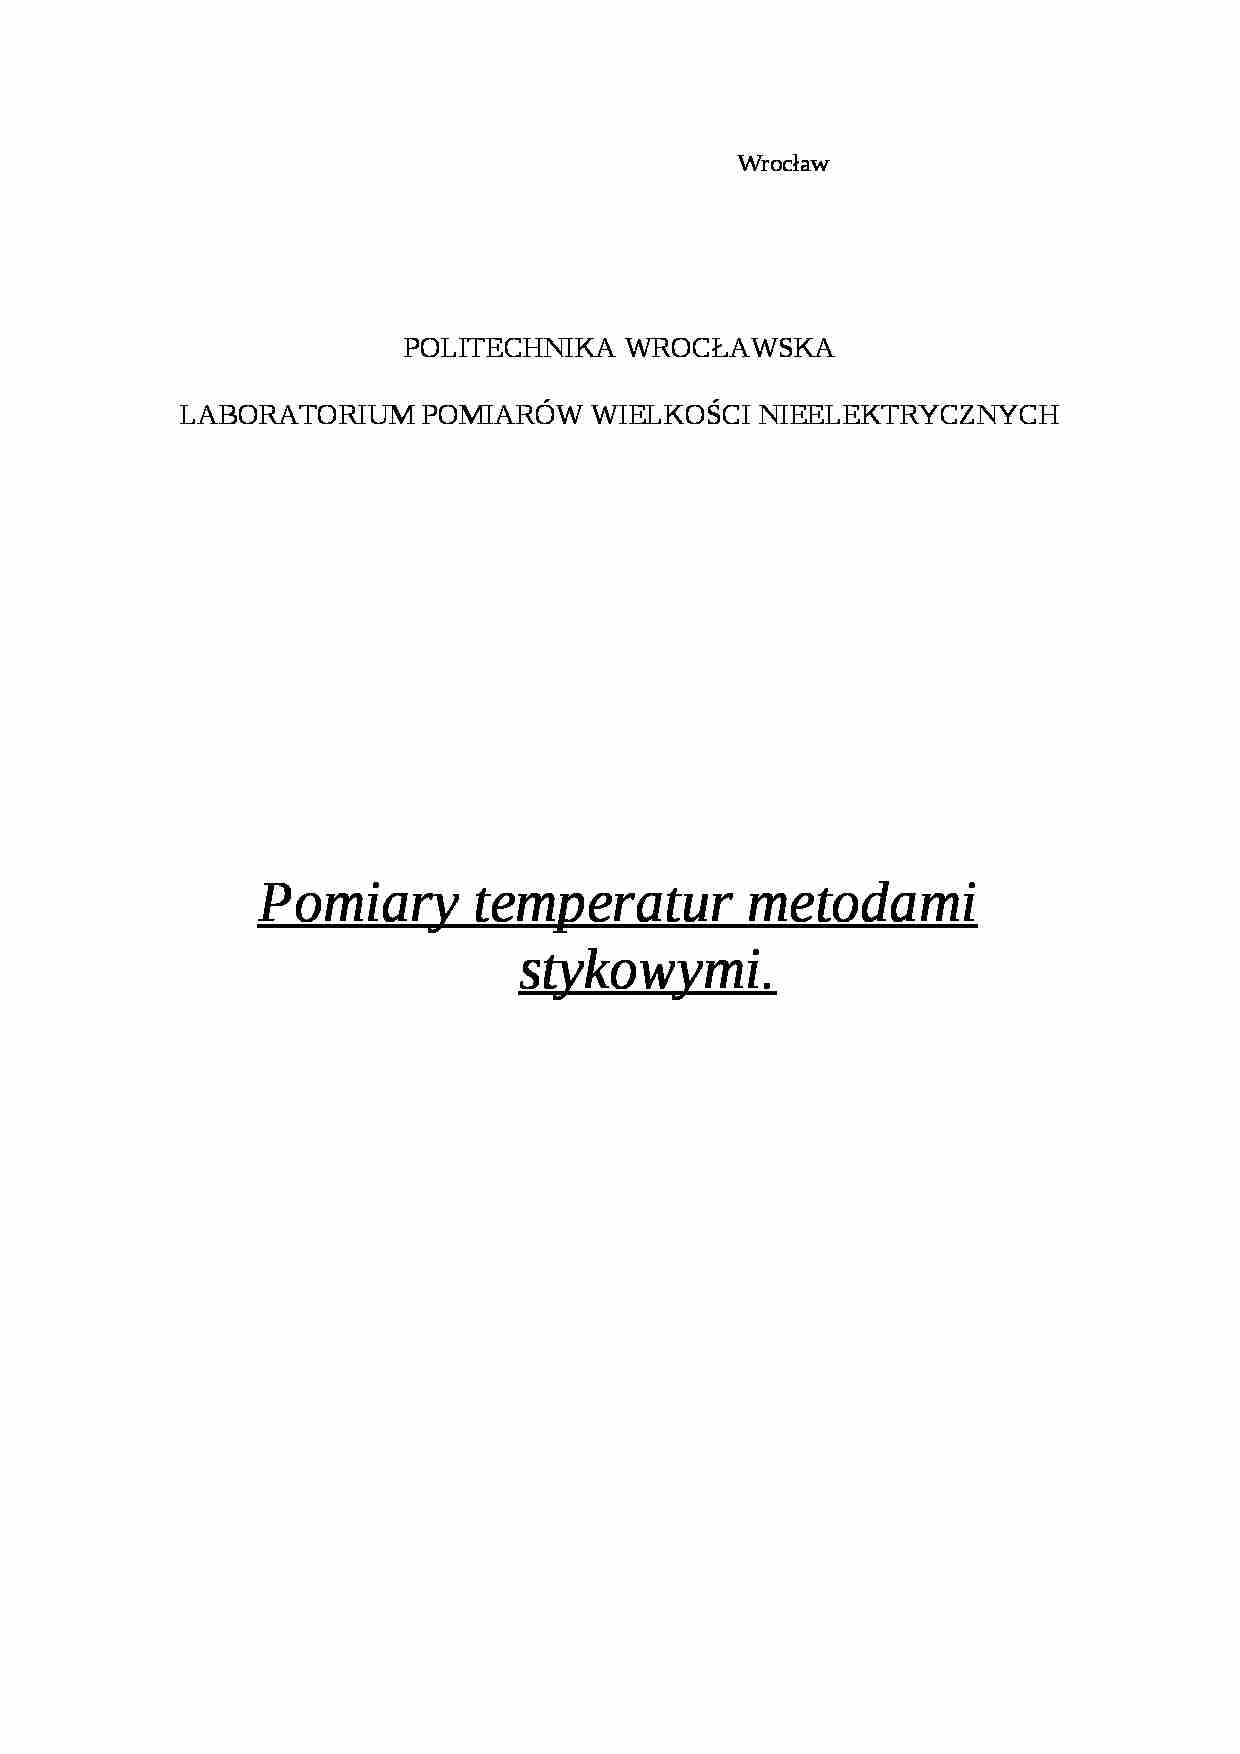 Pomiary temperatur metodami stykowymi-opracowanie - strona 1